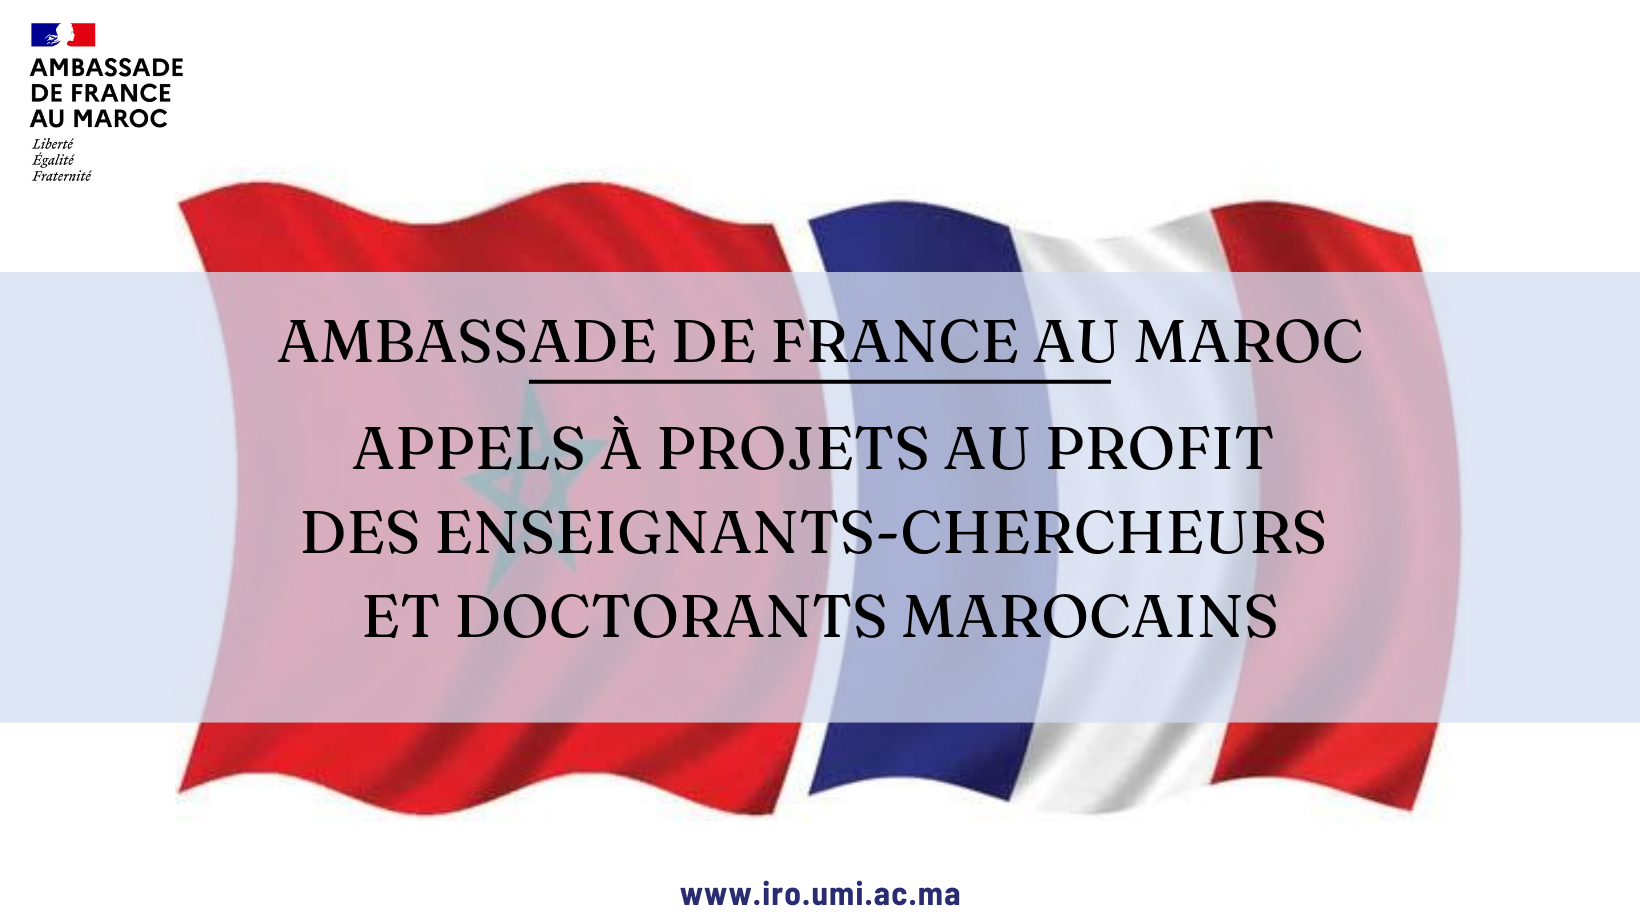 Appels à projets lancés par l’Ambassade de France au Maroc